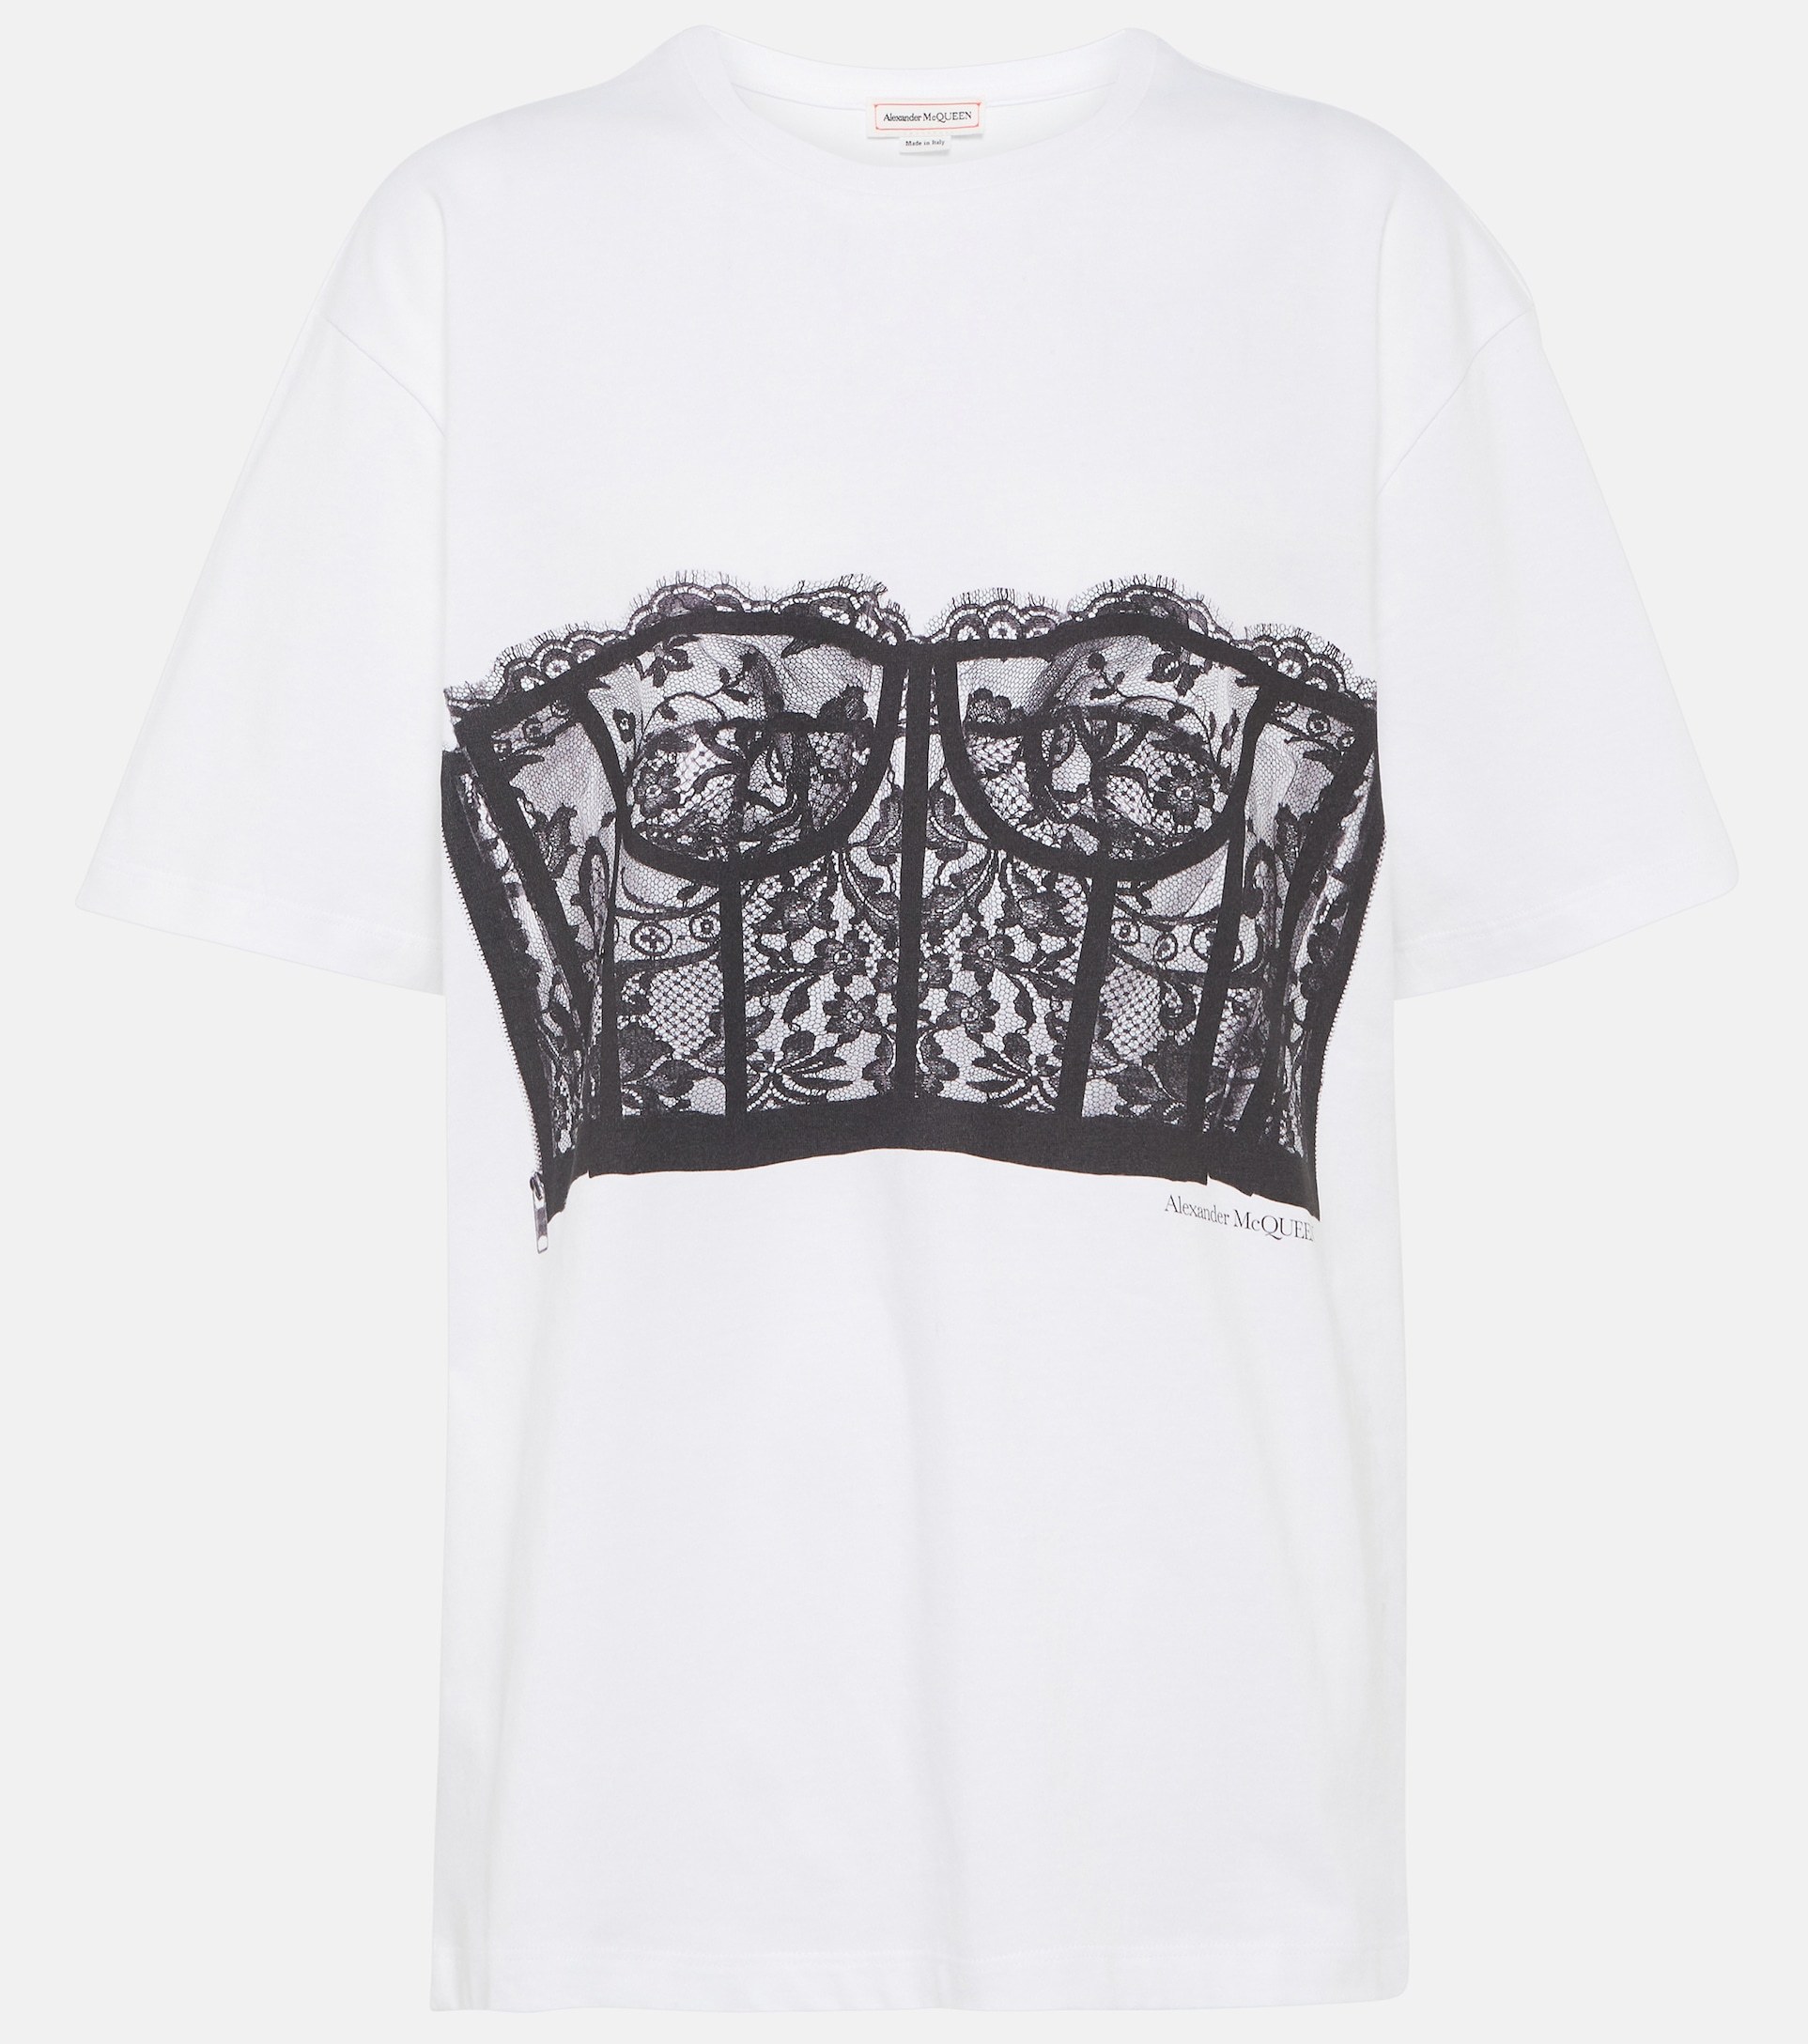 Camiseta blanca con impresión de corsé de encaje, de Alexander McQueen (350 euros).